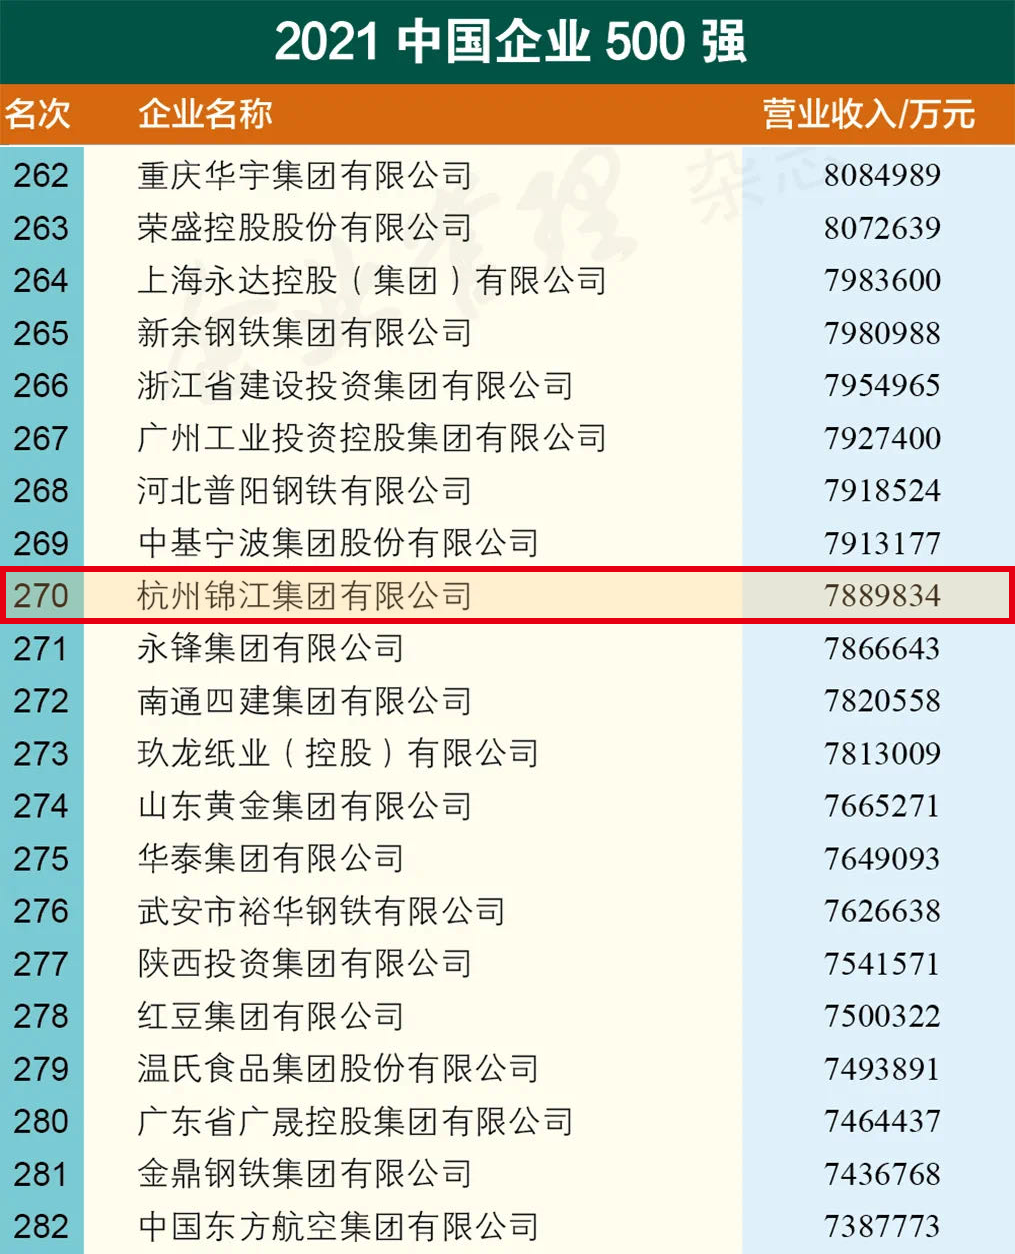 杭州锦江集团 荣登 “2021年中国企业500强、制造业500强榜单”及“2021年中国民营企业500强、制造业500强“榜单